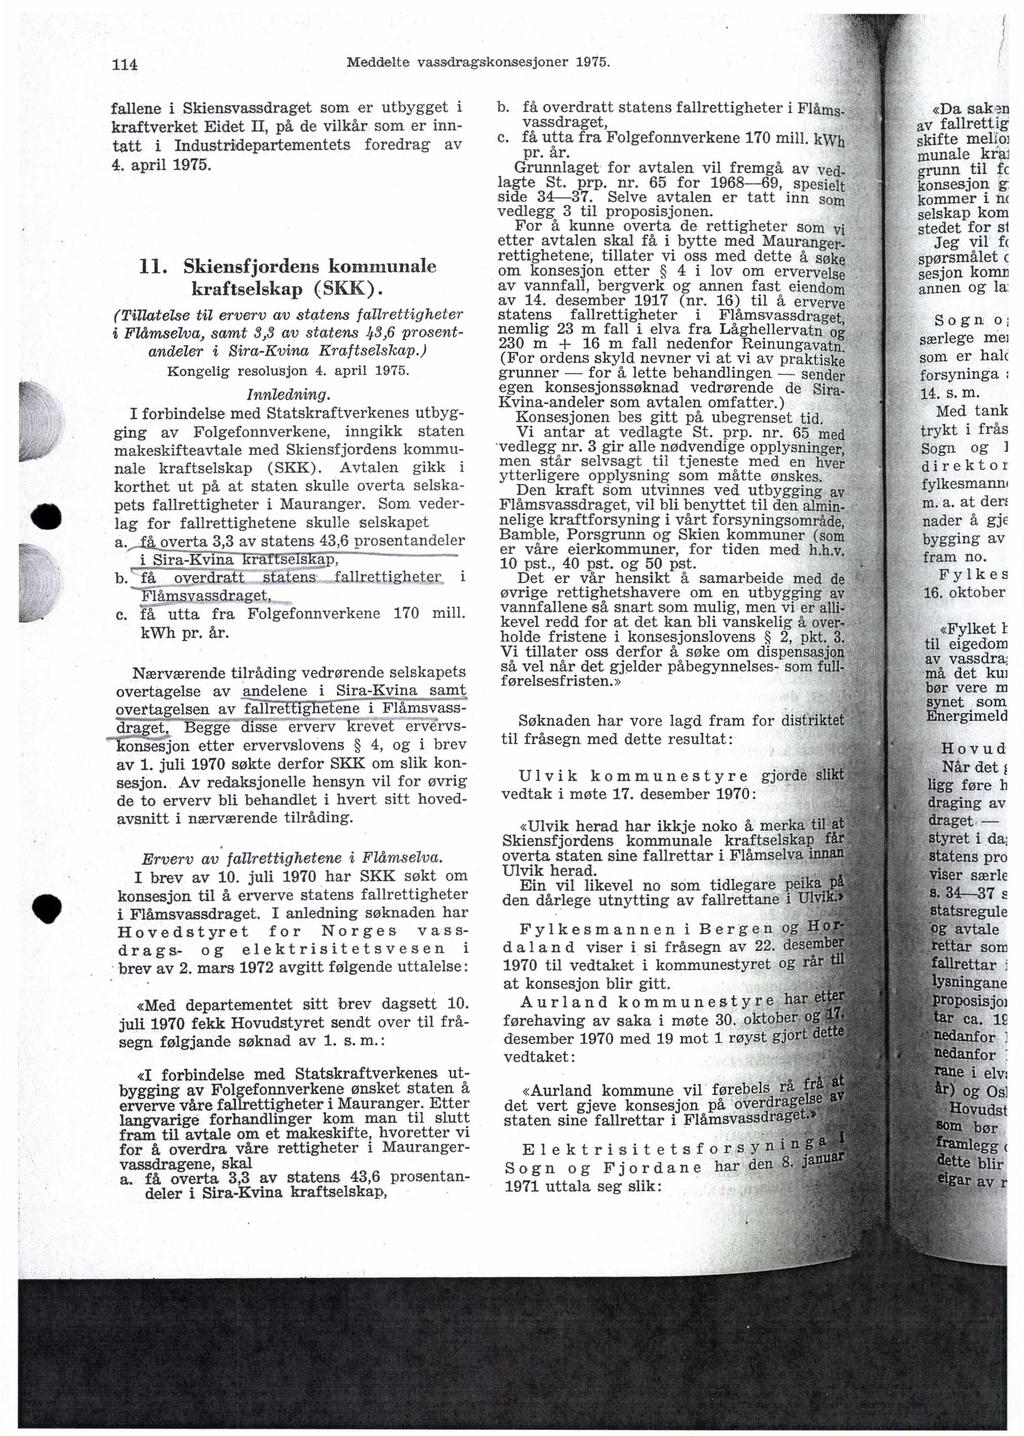 114 Meddelte vasadragskonsesjoner 1975. fallene i Skiensvassdraget som er utbygget i kraftverket Eidet II, på de vilkår som er inntatt i Industridepartementets foredrag av 4. april 1975. 11.